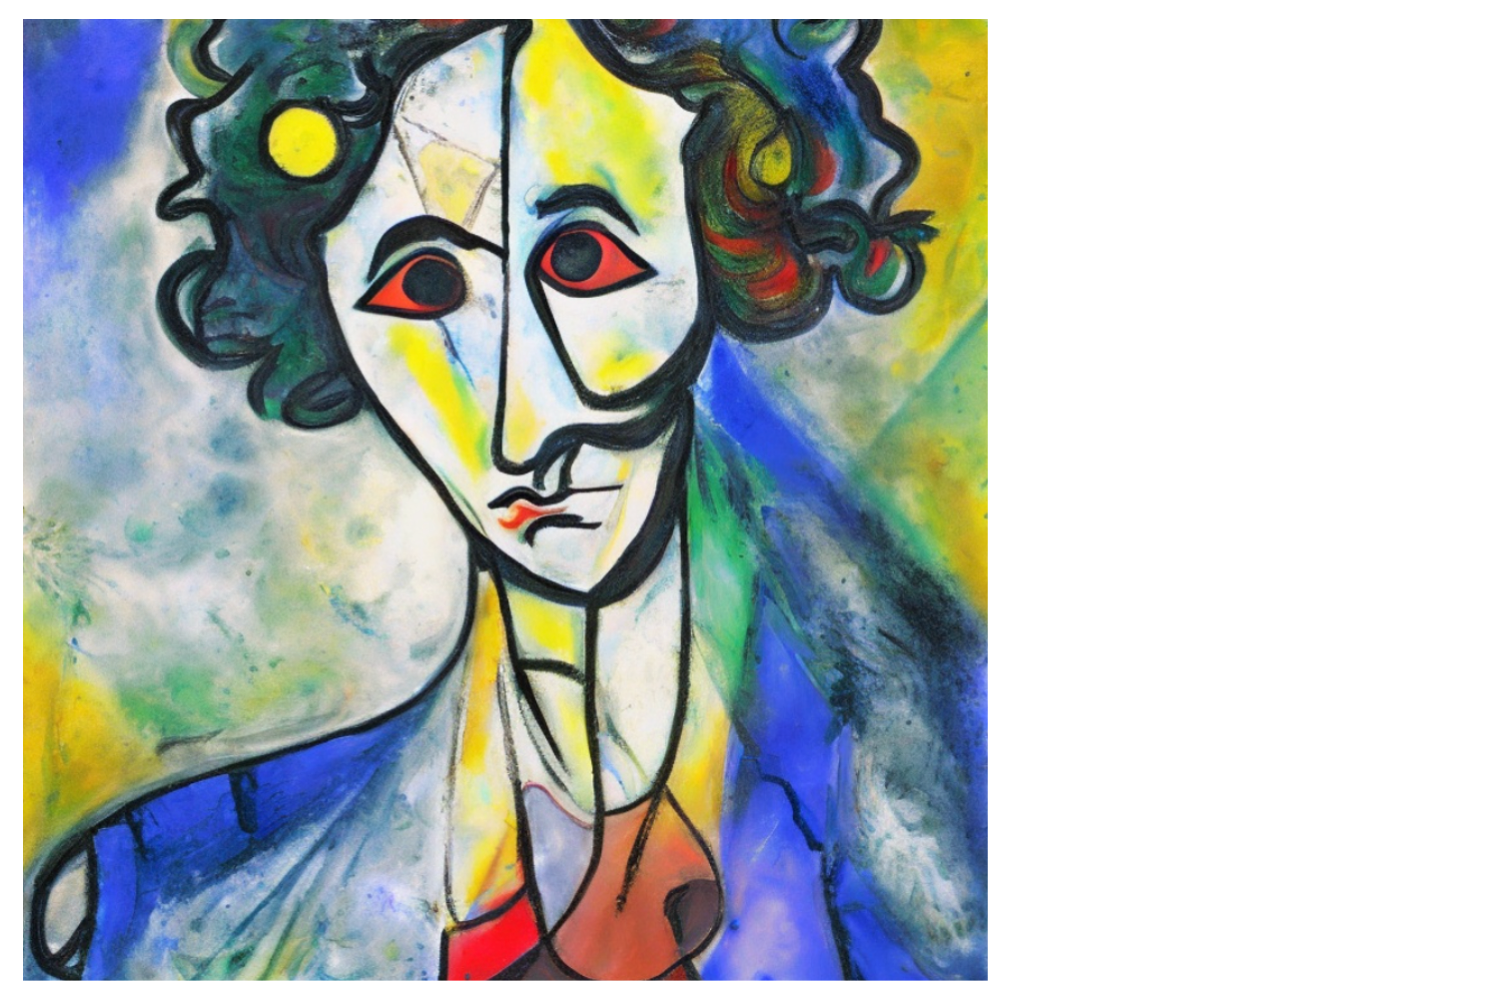 Artists Meet Artists Marc Chagall